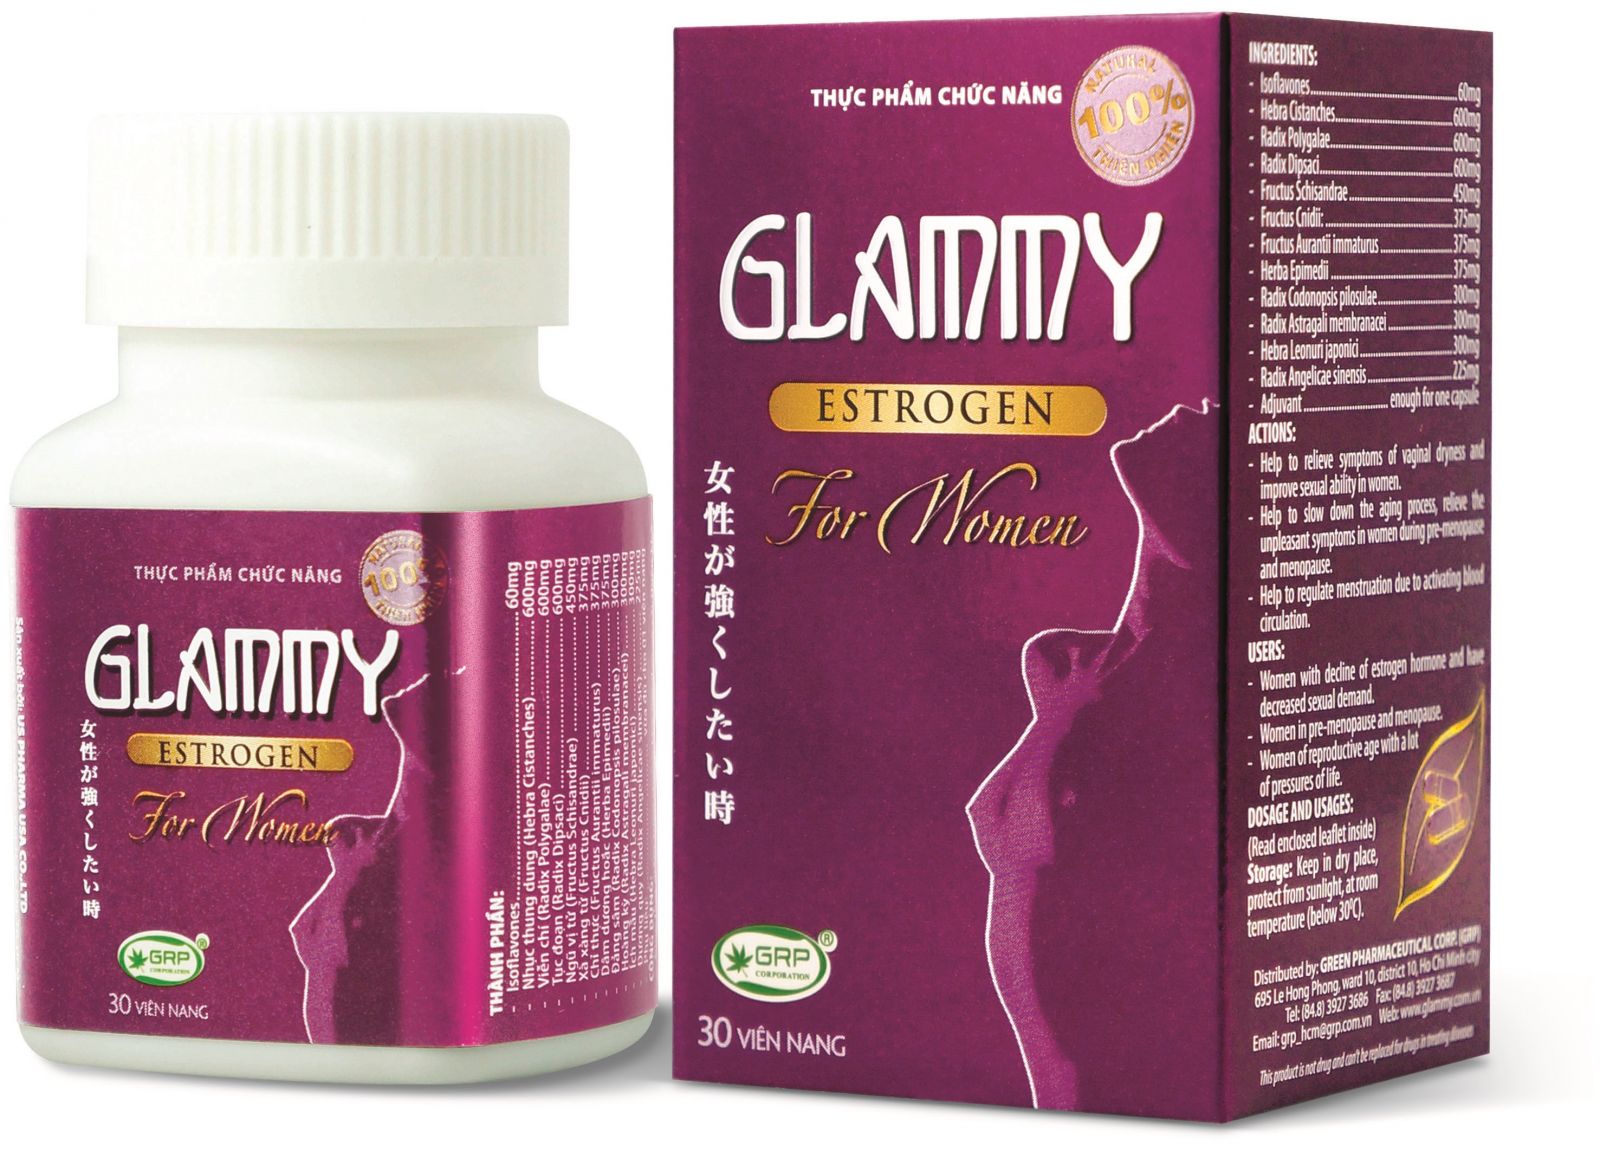 Glammy Estrogenz – Thực phẩm bảo vệ sức khỏe cho nữ